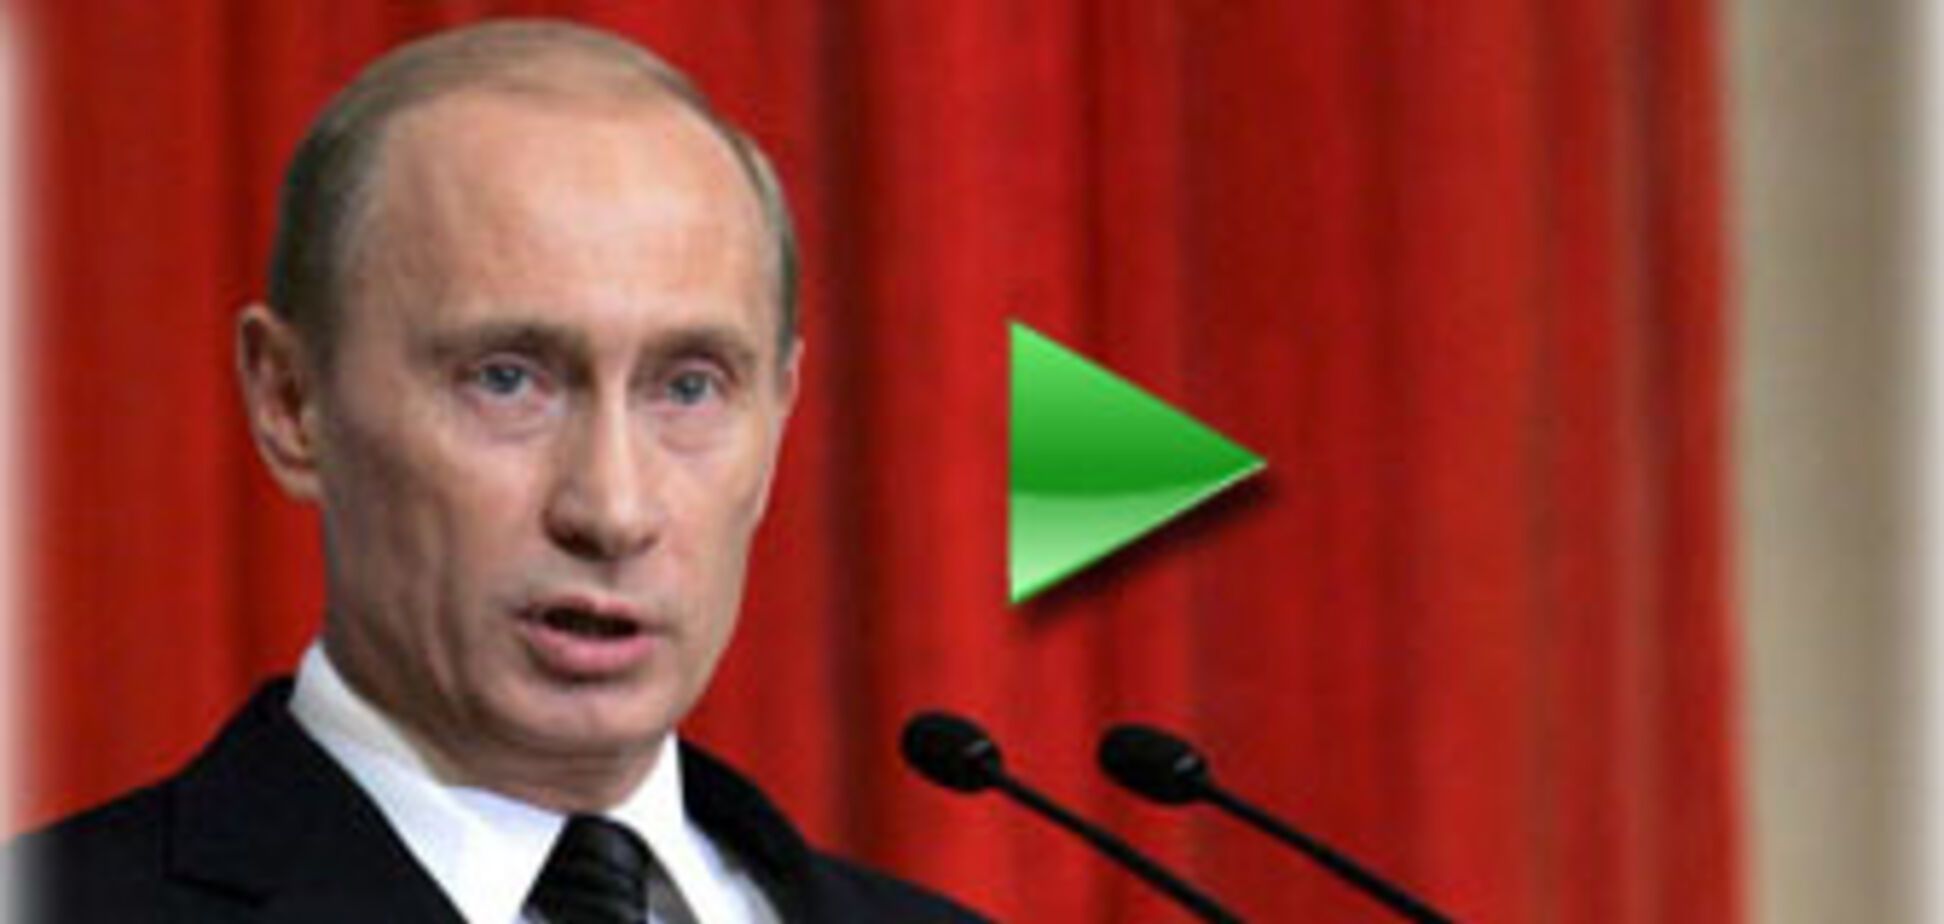 Володимир Путін став прем'єр-міністром Росії